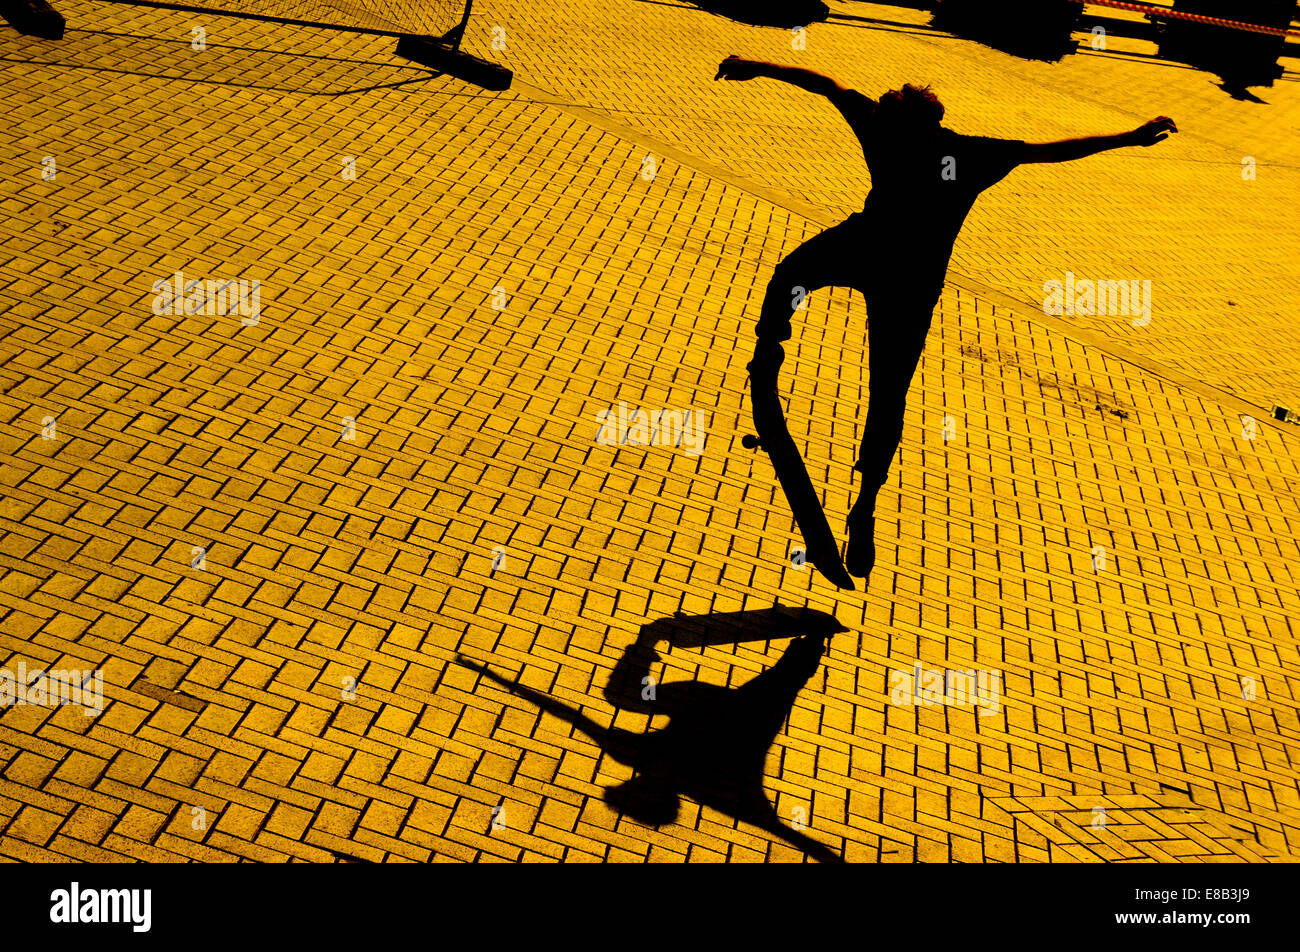 Un skateur professionnel au crépuscule fait un saut jette une ombre sur la surface pavée de briques. Banque D'Images